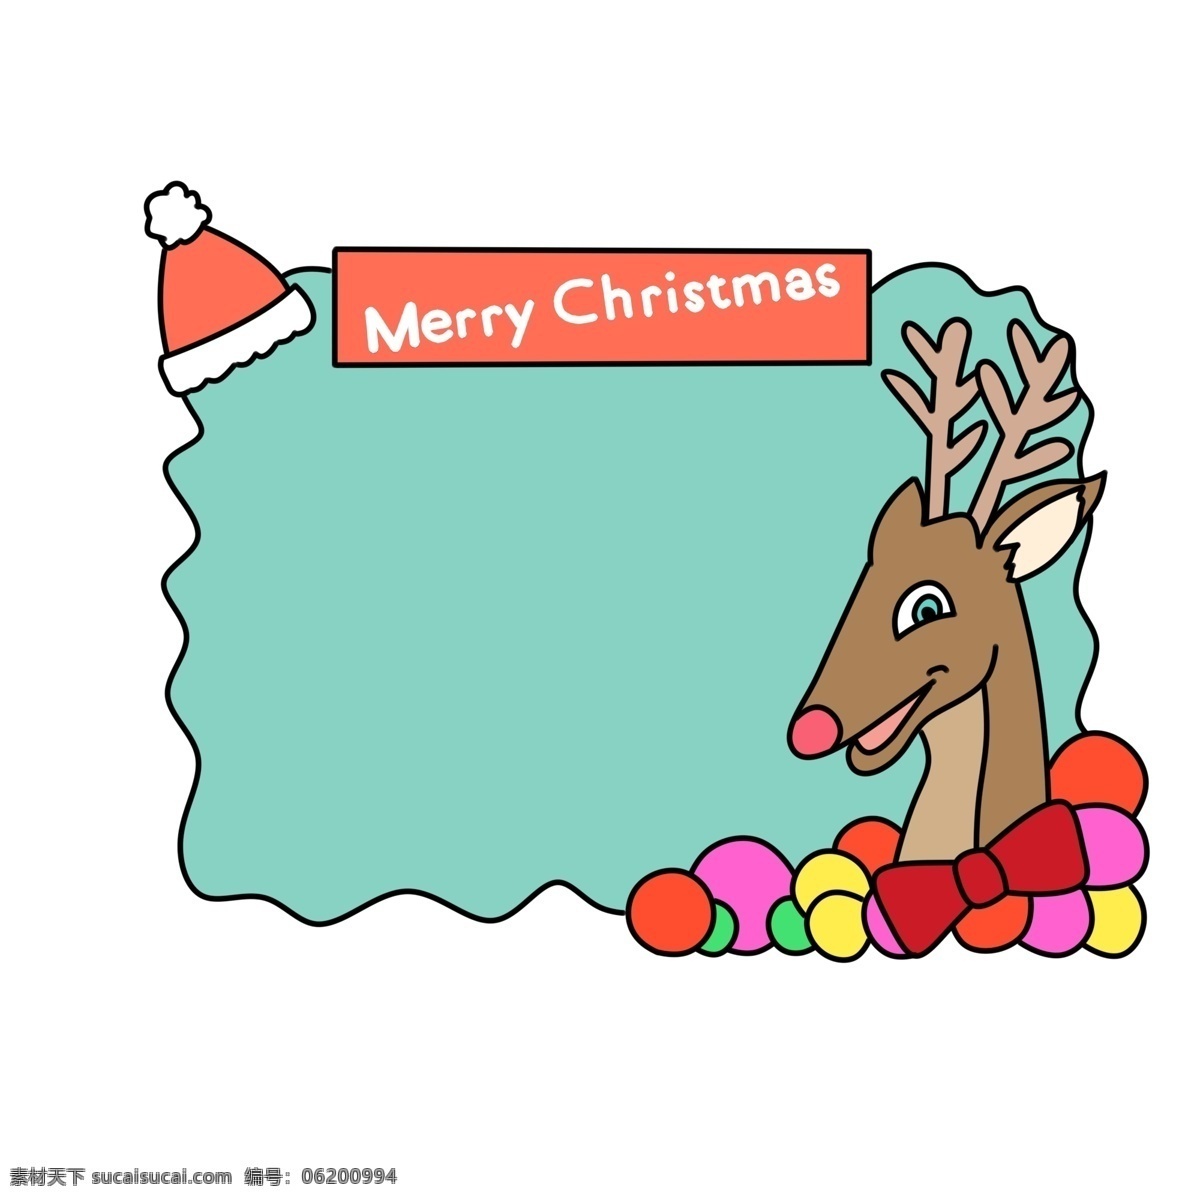 圣诞节 麋鹿 边框 插画 圣诞节边框 唯美边框 蓝色的边框 边框插画 可爱的麋鹿 红色的蝴蝶机 红色的圣诞帽